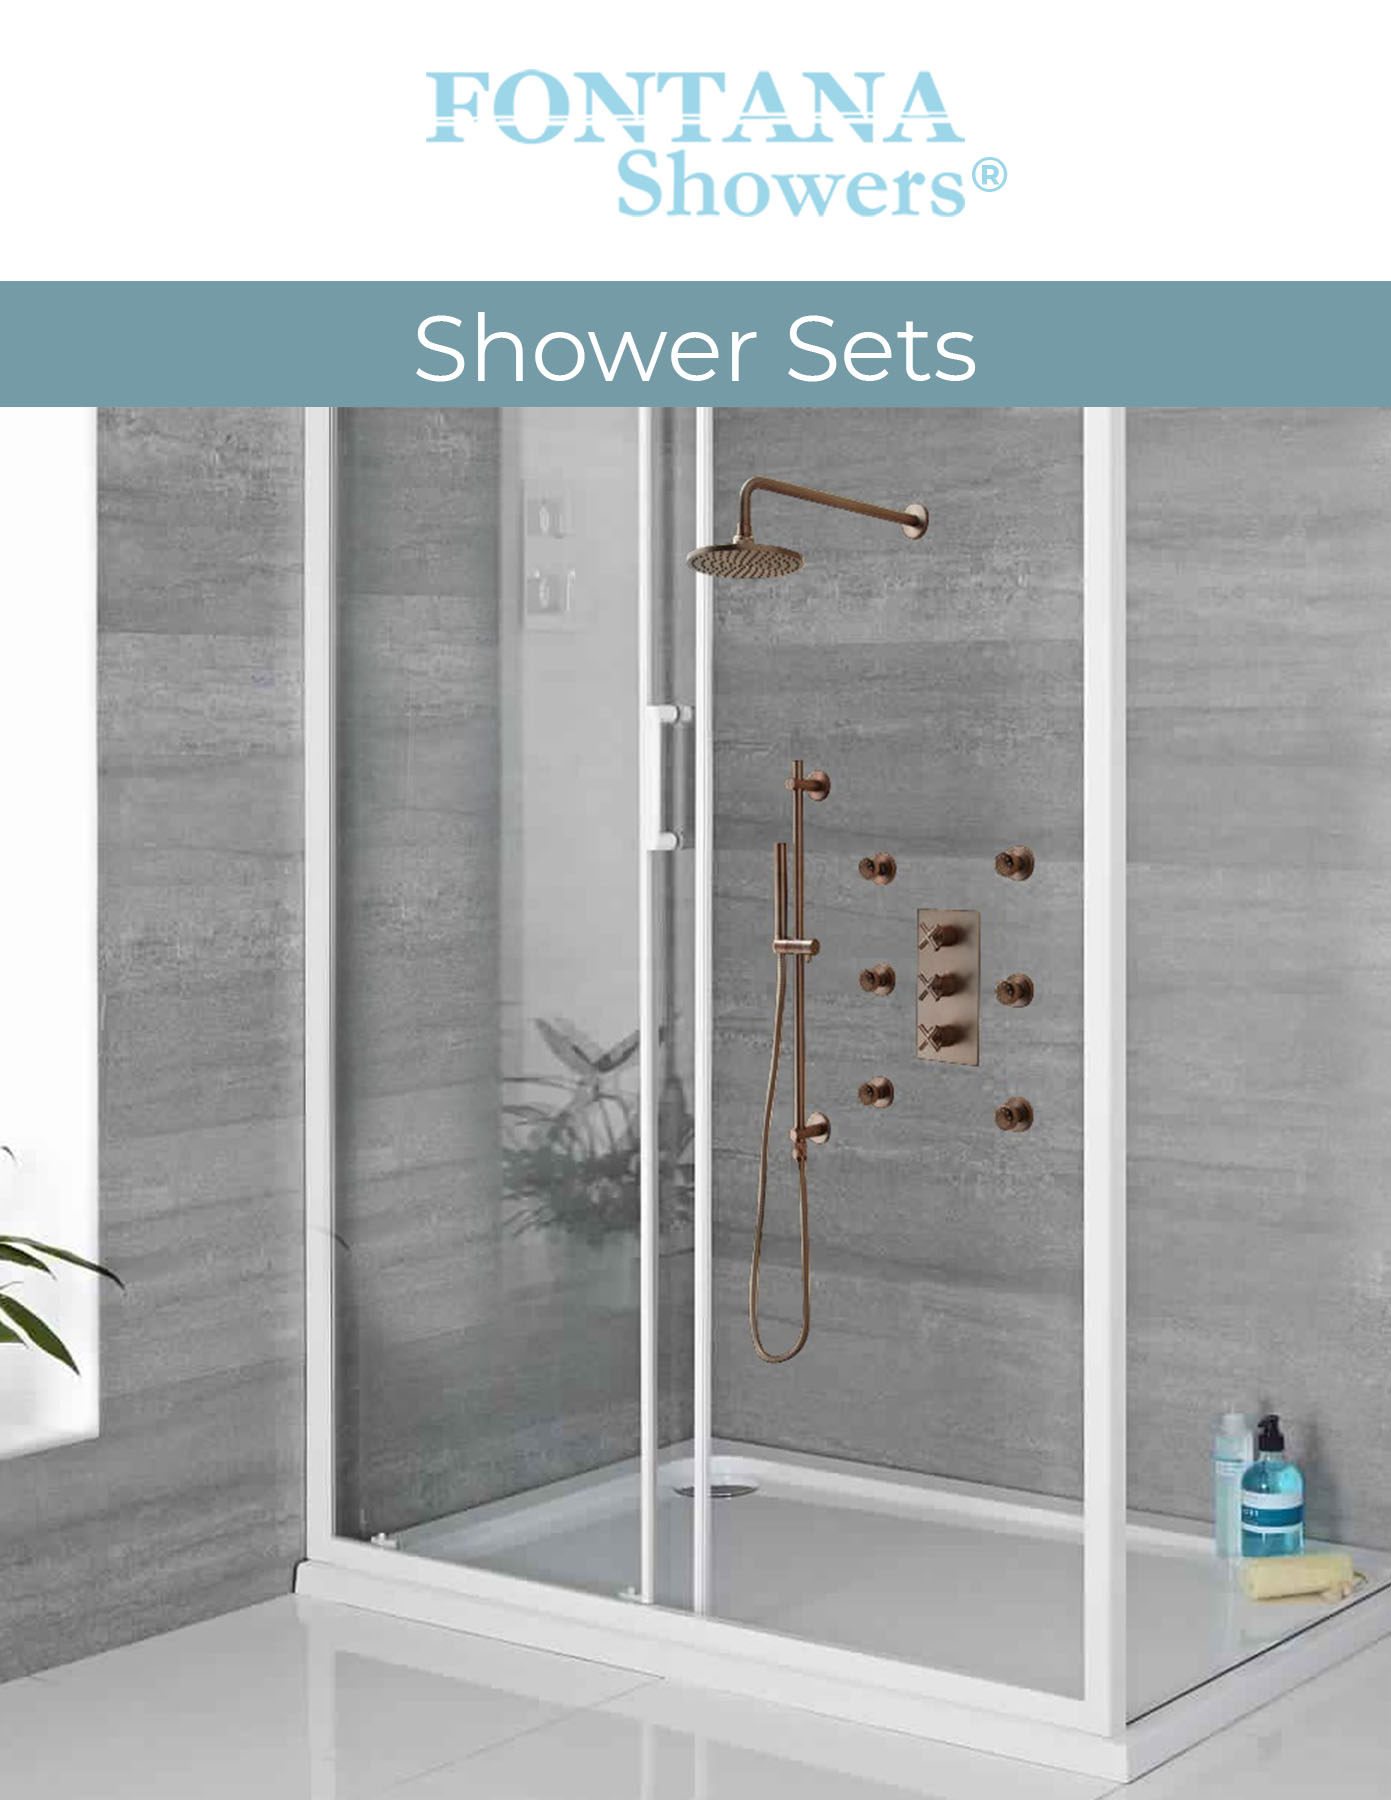 Fontana Showers commercial catalog Showers